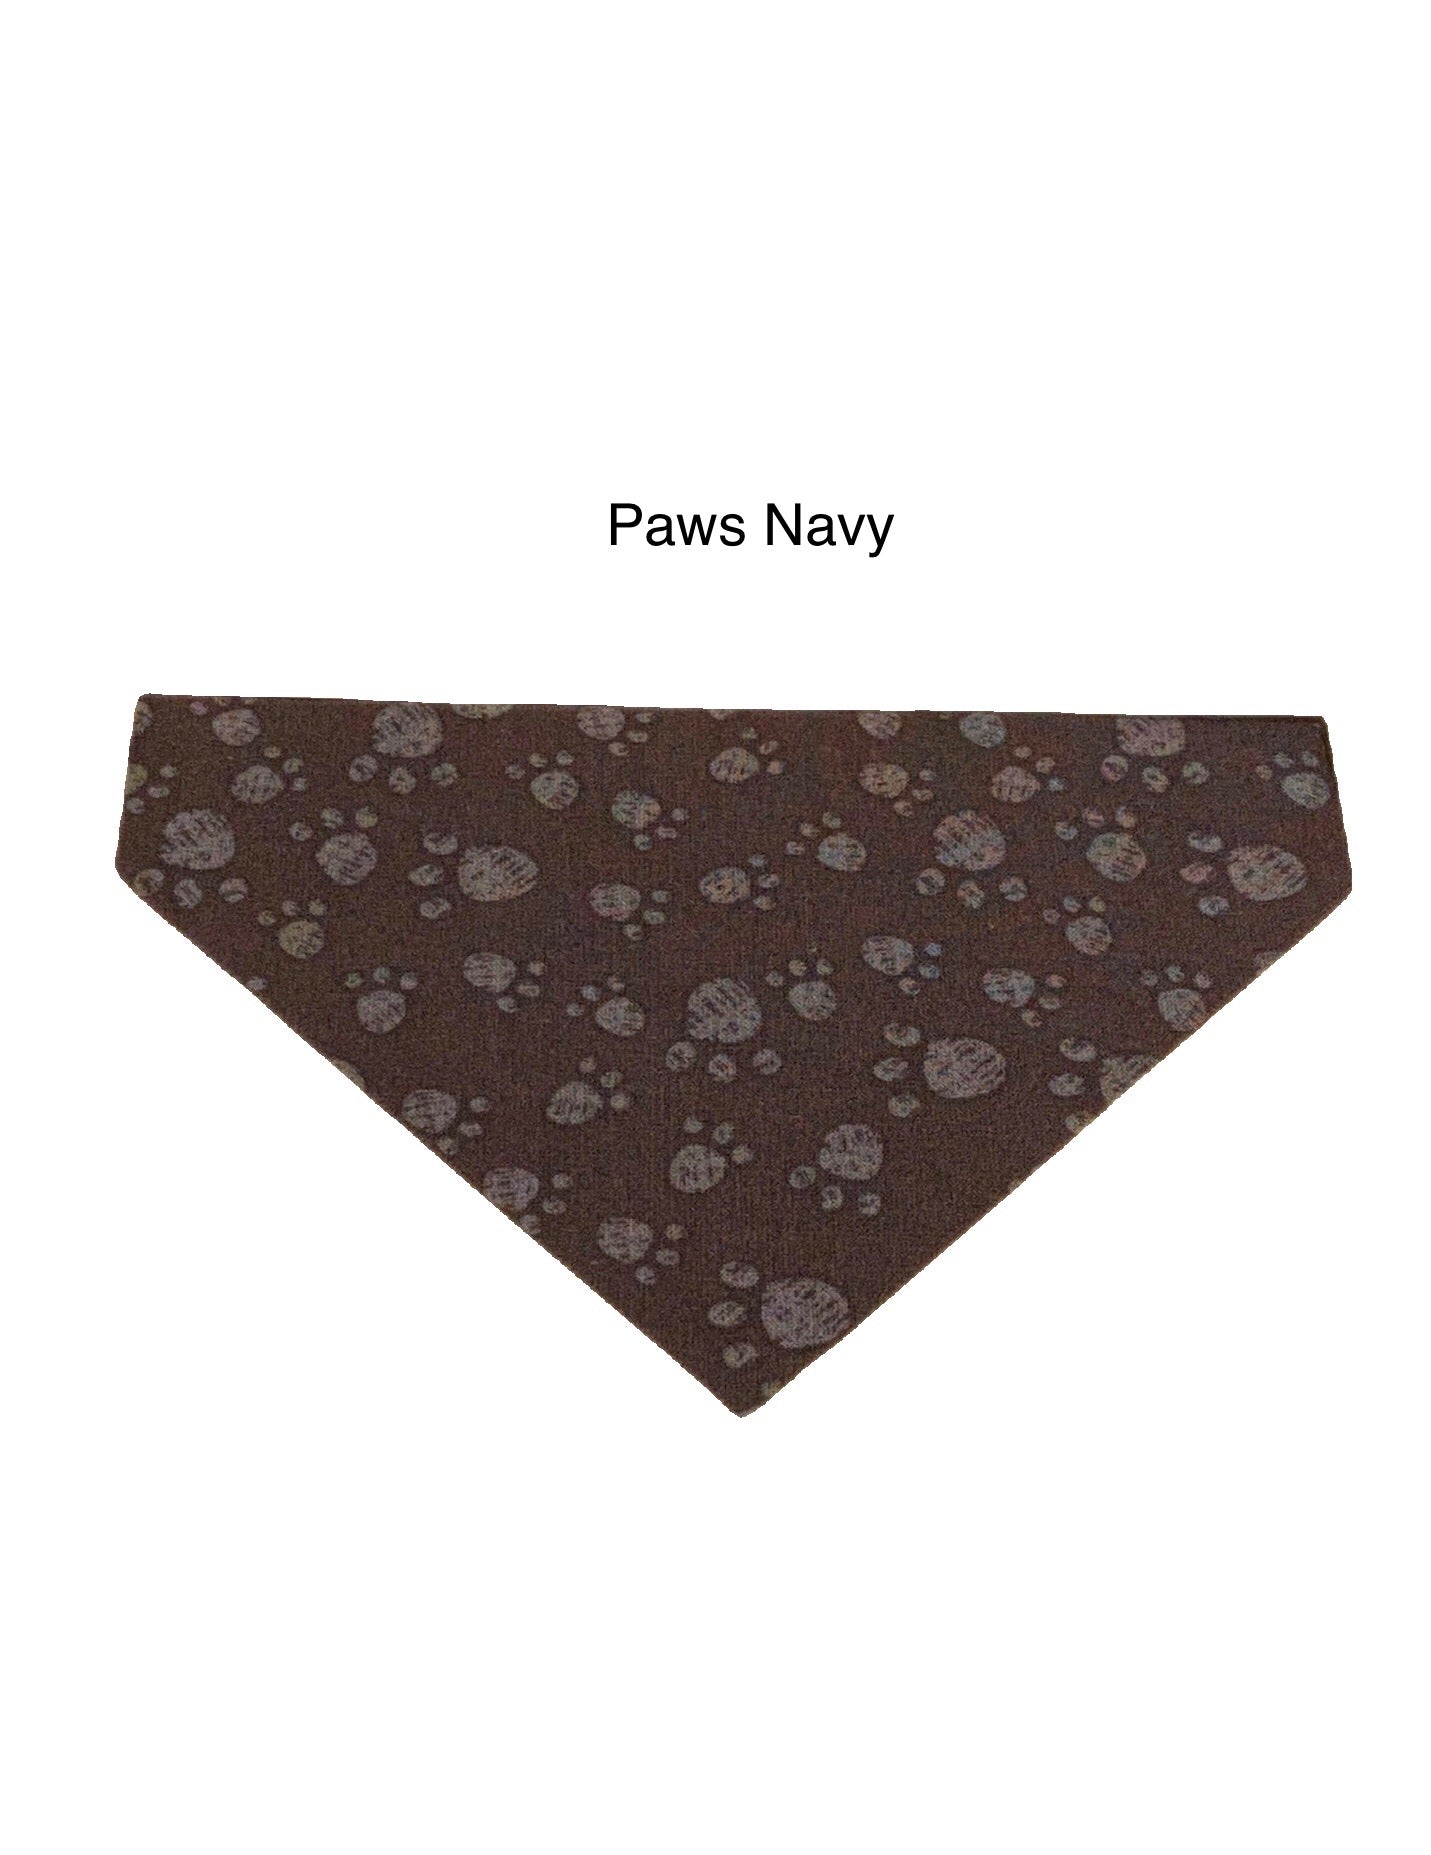 Pawsitive Petwear Bandanas Paws Navy